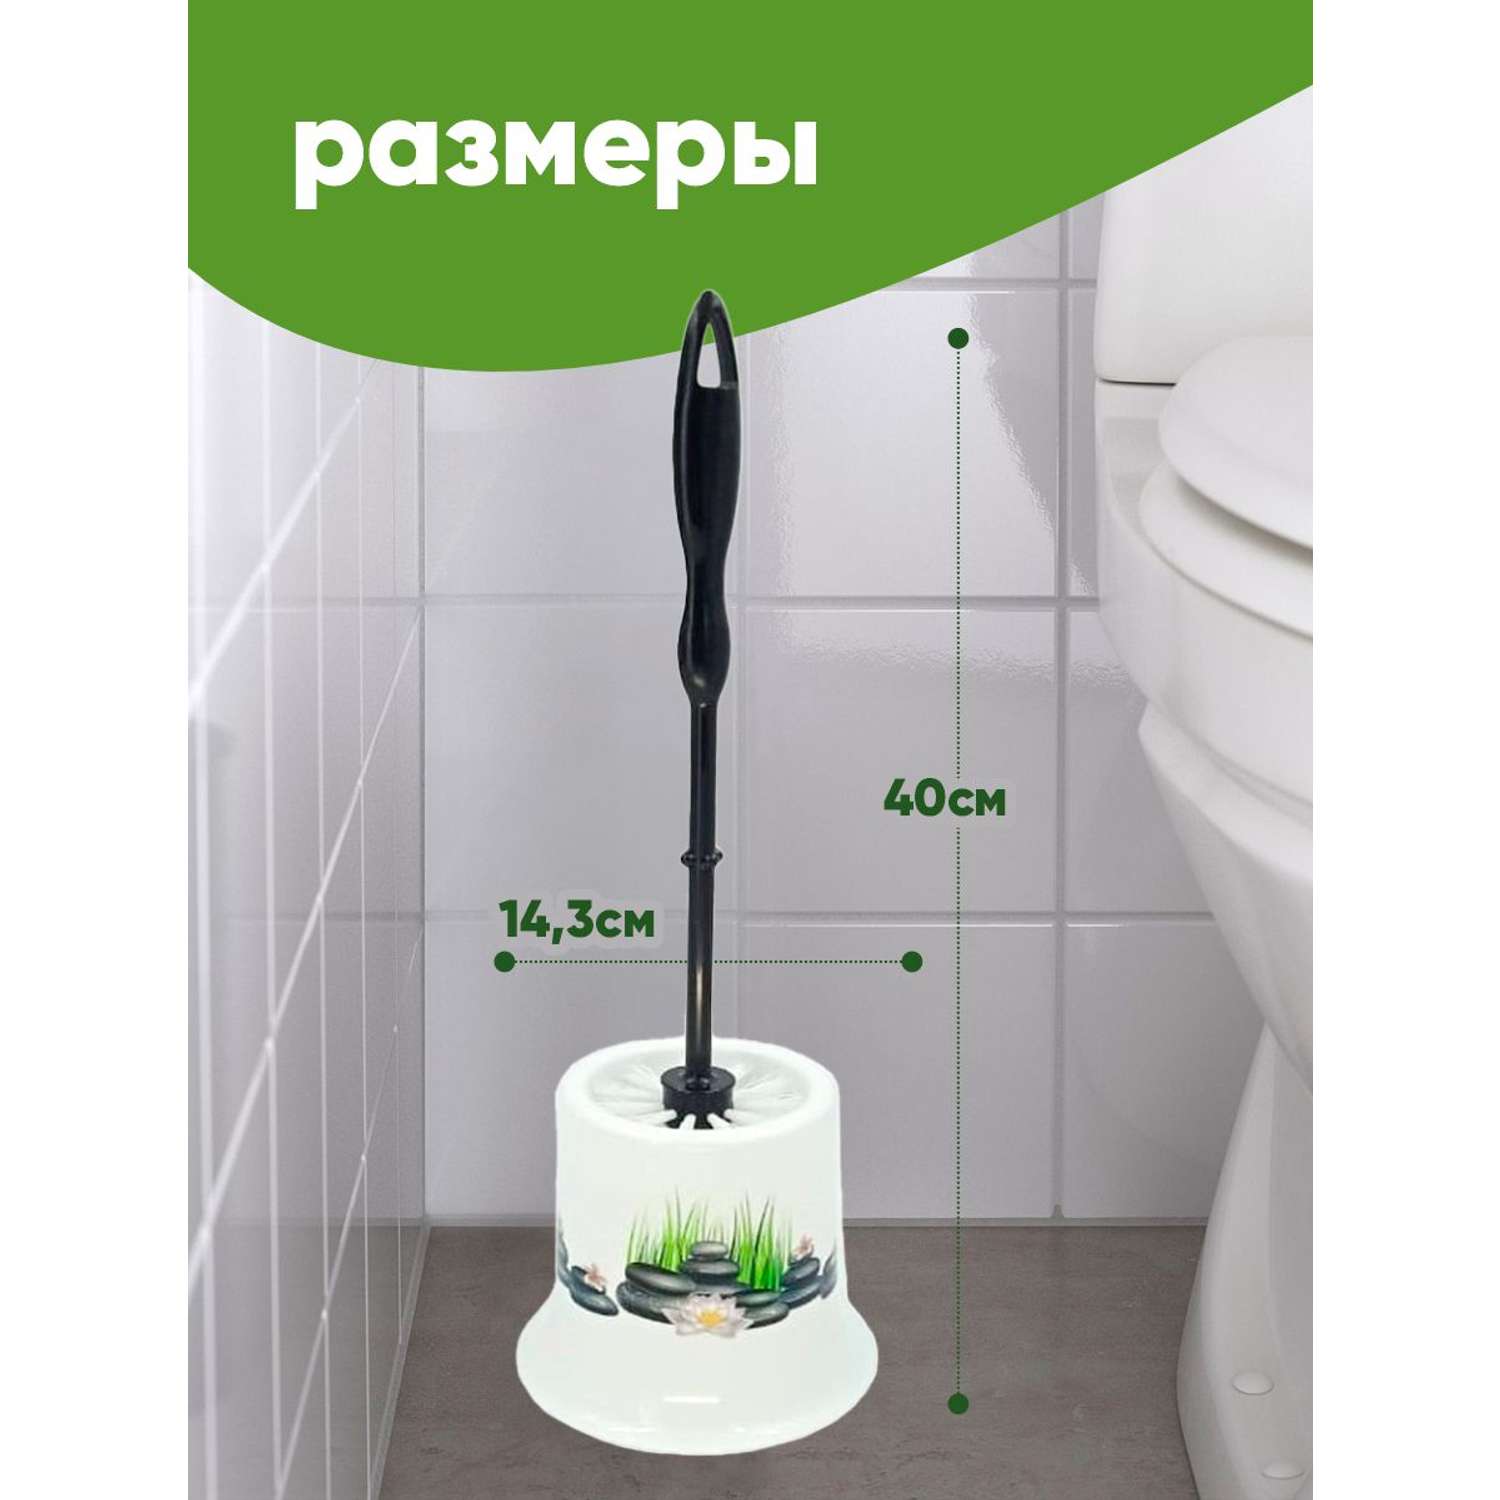 Комплект для туалета elfplast Стандарт ёрш с подставкой 14.3х40 см белый черный - фото 2